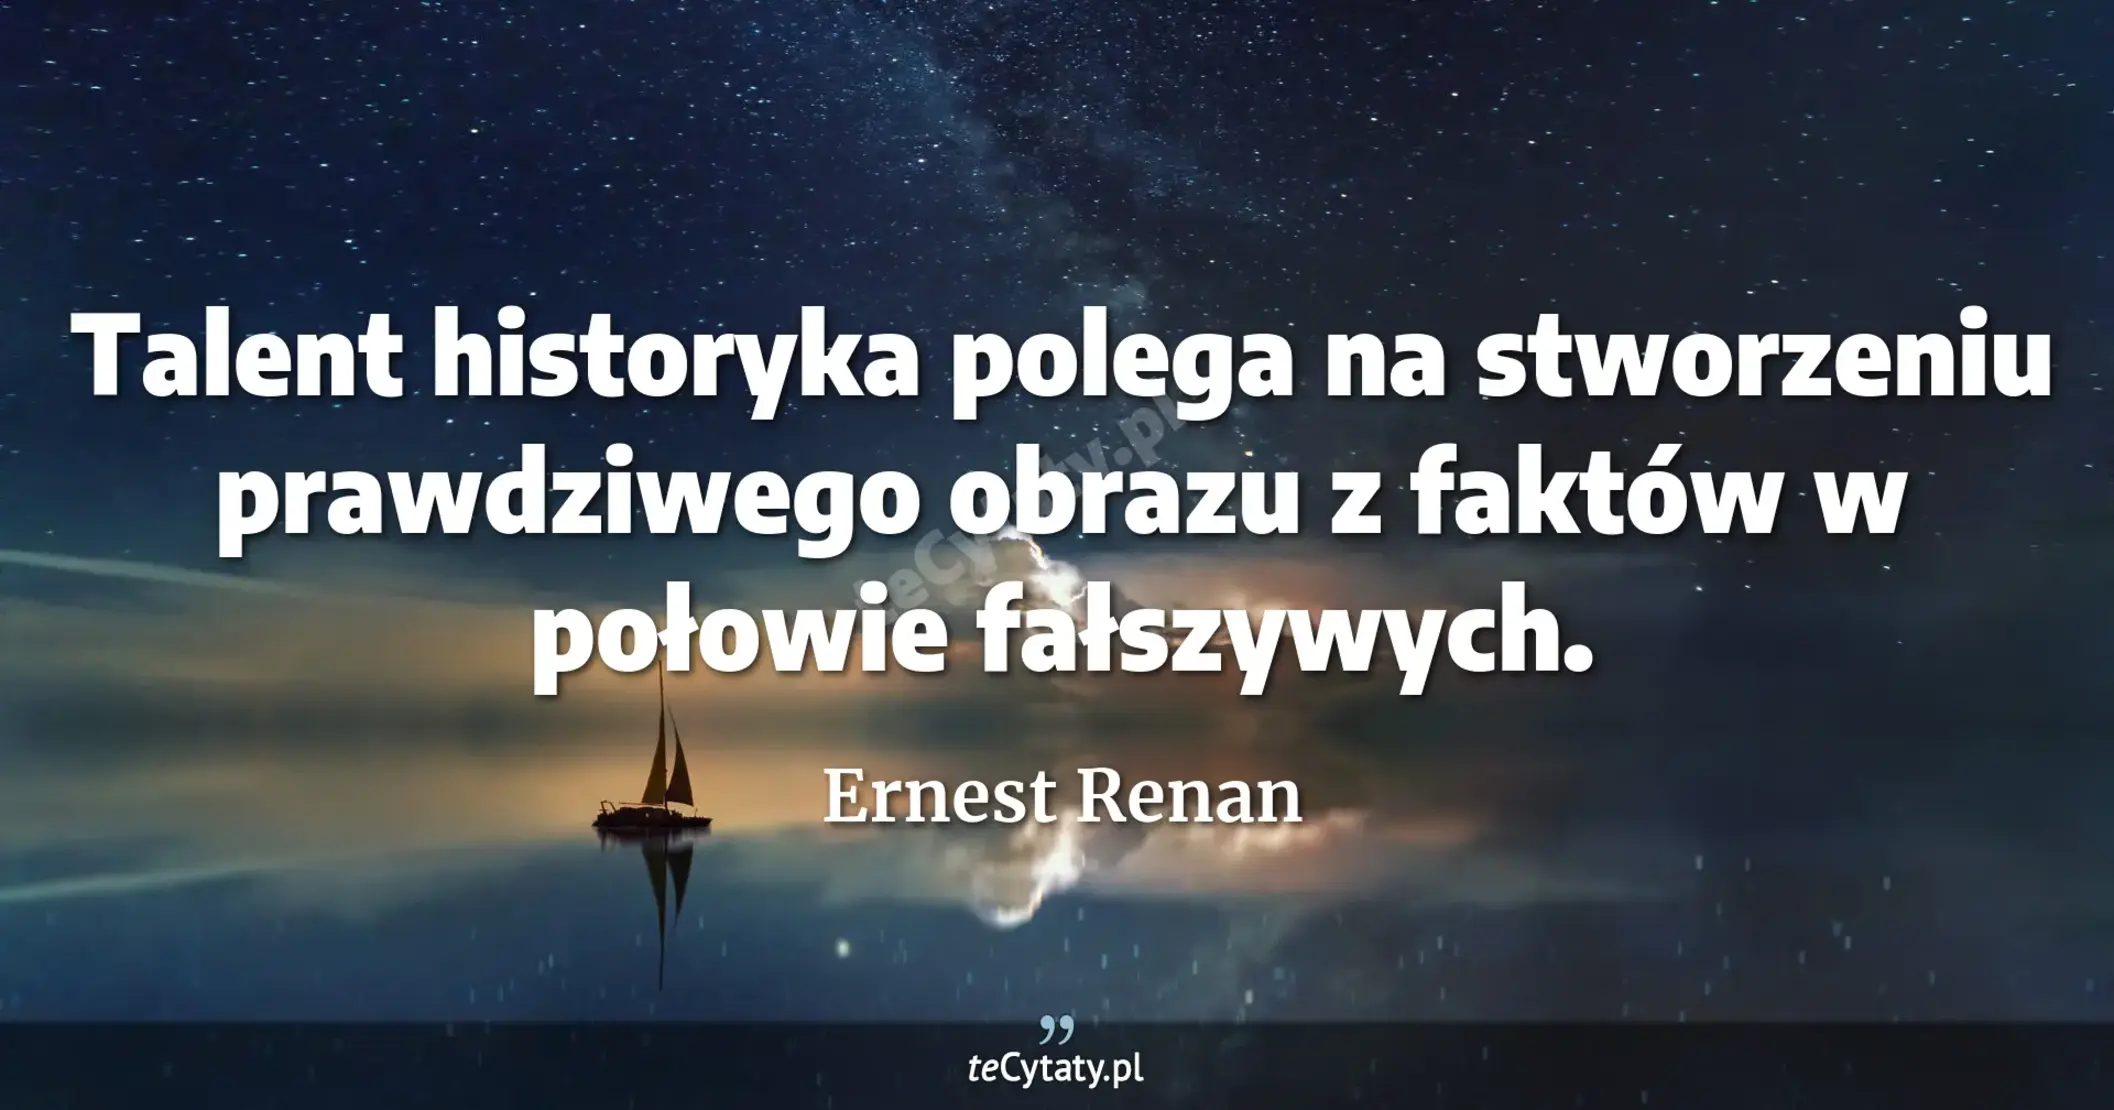 Talent historyka polega na stworzeniu prawdziwego obrazu z faktów w połowie fałszywych. - Ernest Renan